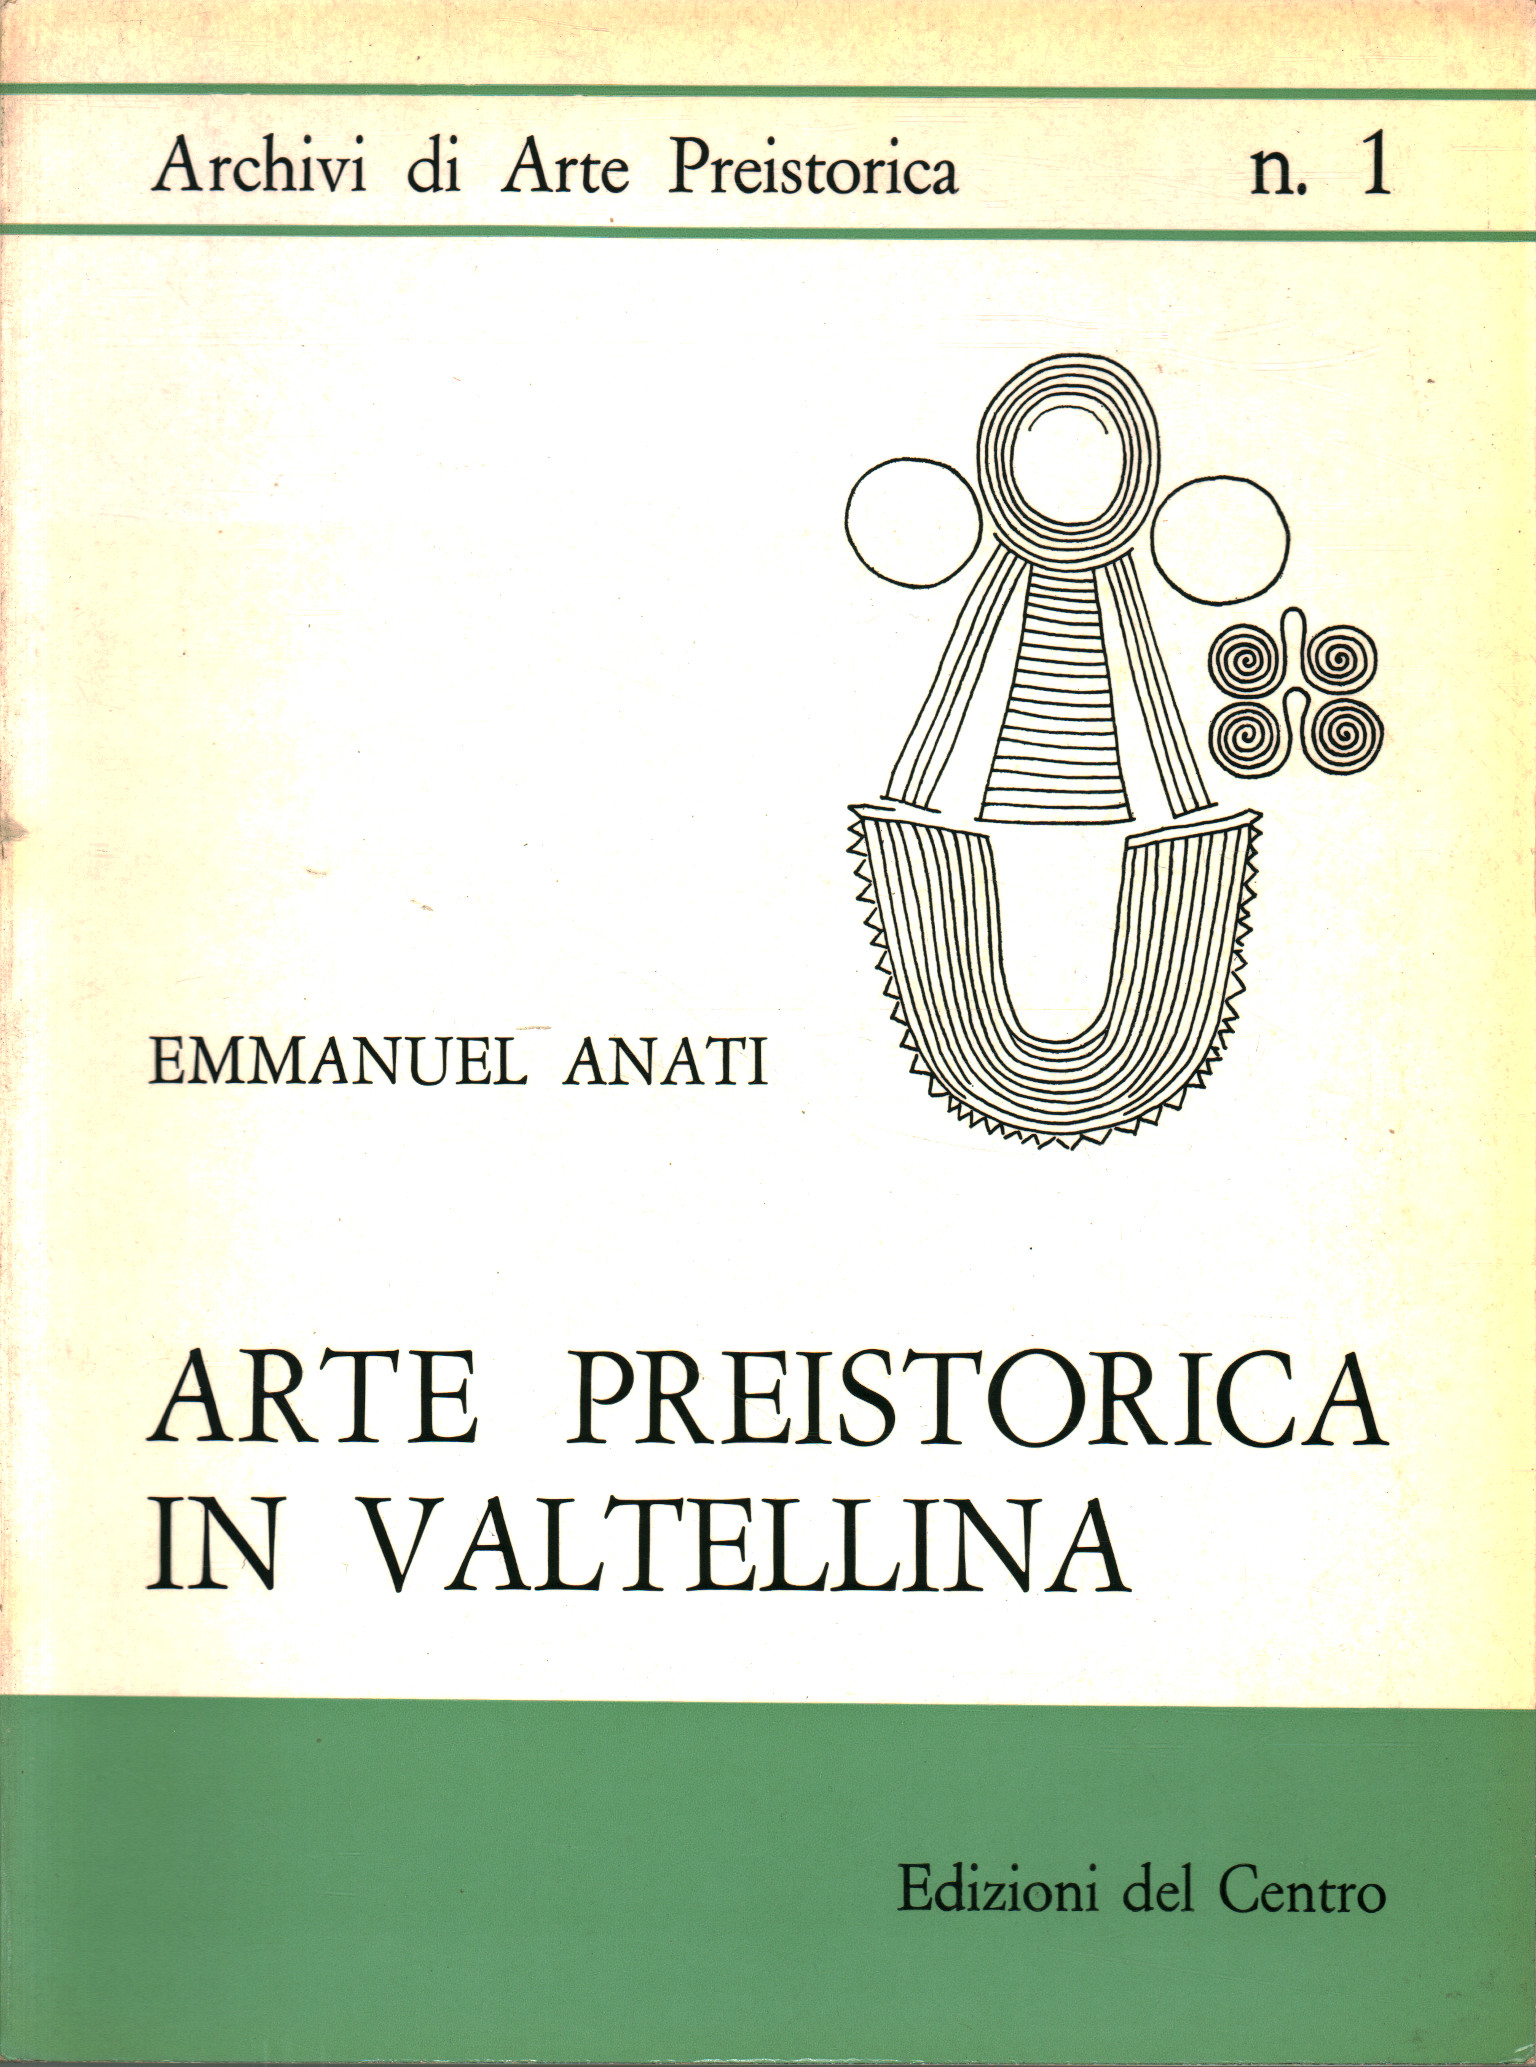 Prehistoric art in Valtellina, Emmanuel Anati